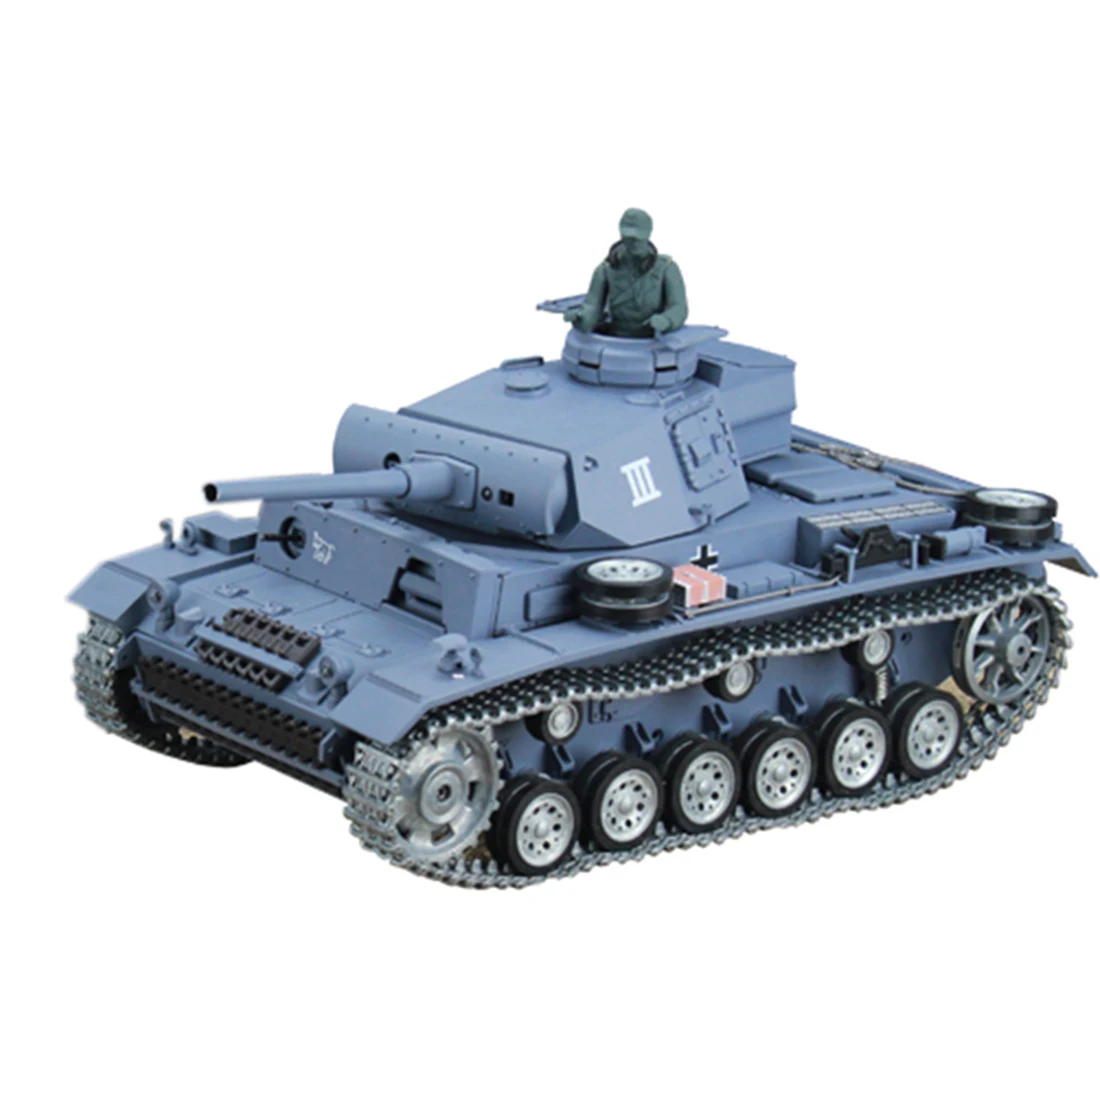 

Модель немецкого танка III L с дистанционным управлением, модель военного танка с эффектом шума и стрельбы, 1 шт., 2,4 ГГц, металлическая, Ultimate ...